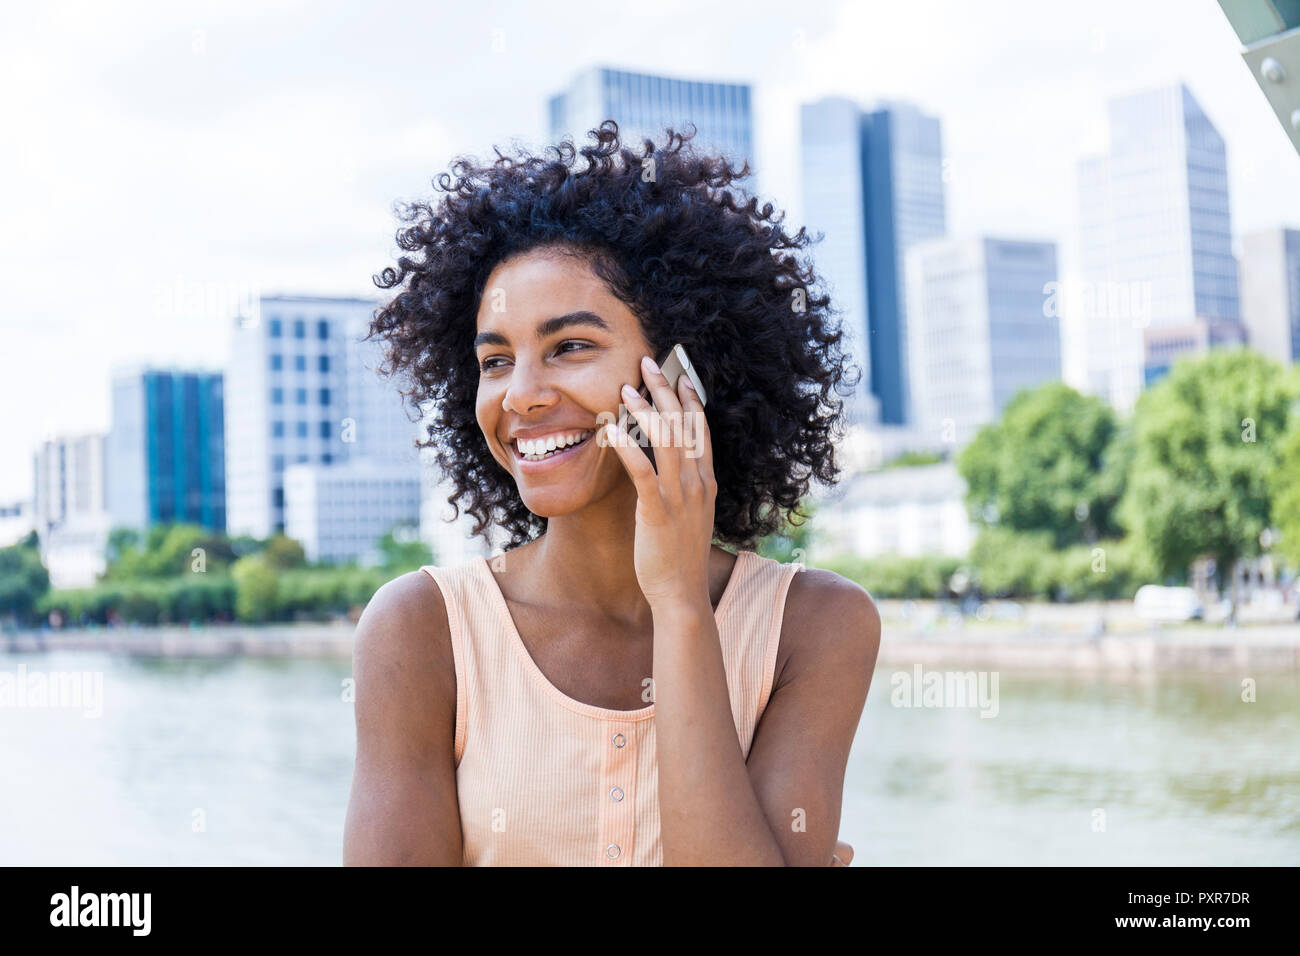 Alemania, Frankfurt, retrato de mujer sonriente con el pelo rizado en el teléfono Foto de stock